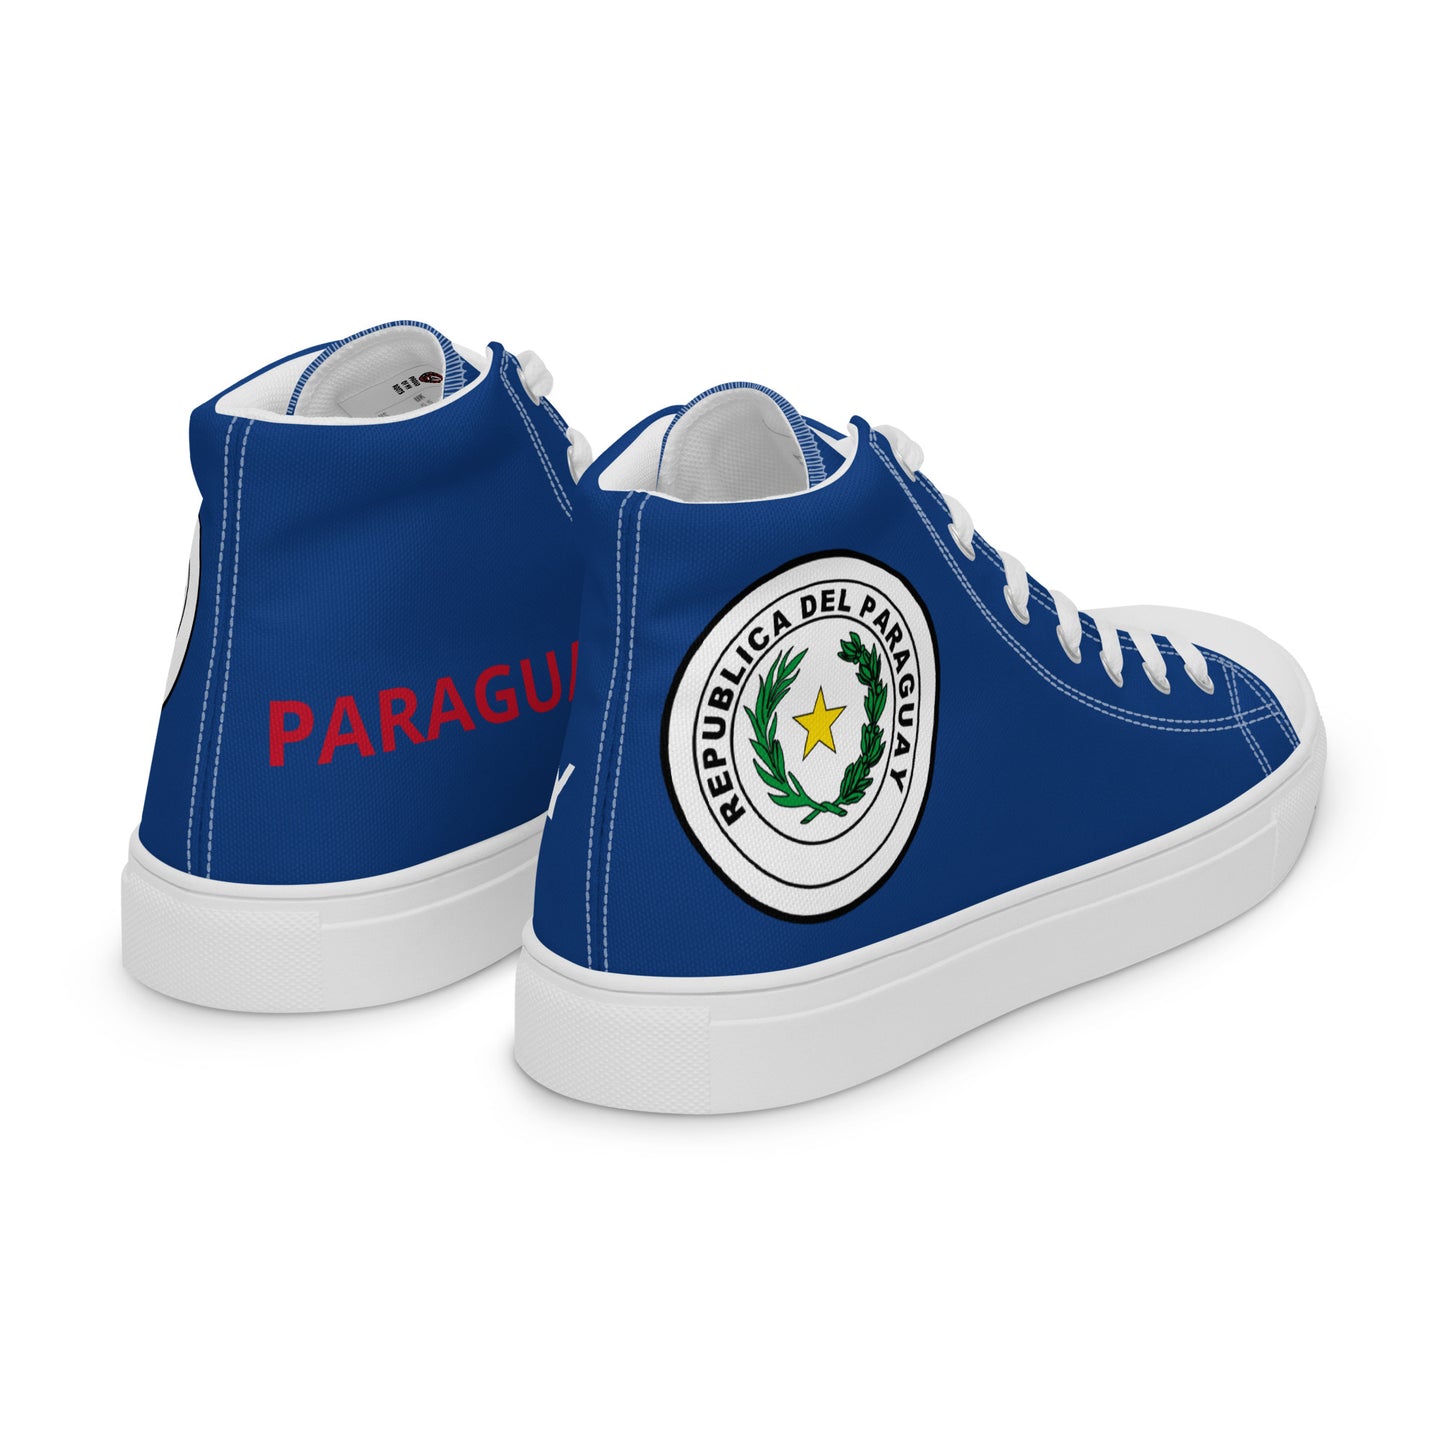 Paraguay - Men - Blue - High top shoes